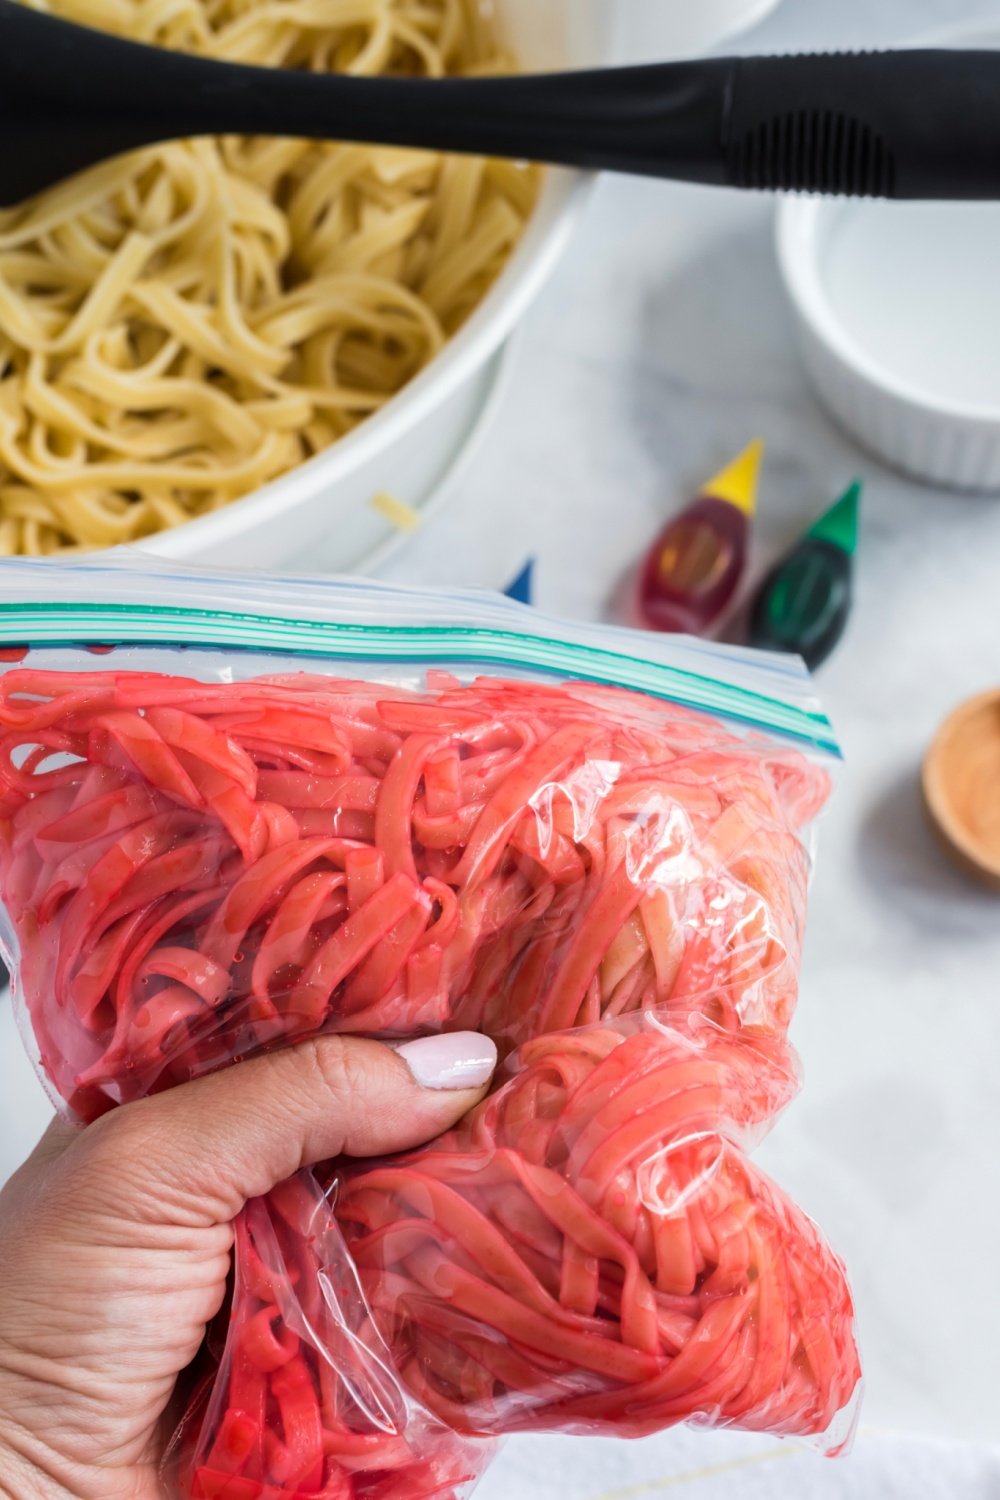 red noodles in a ziplock bag